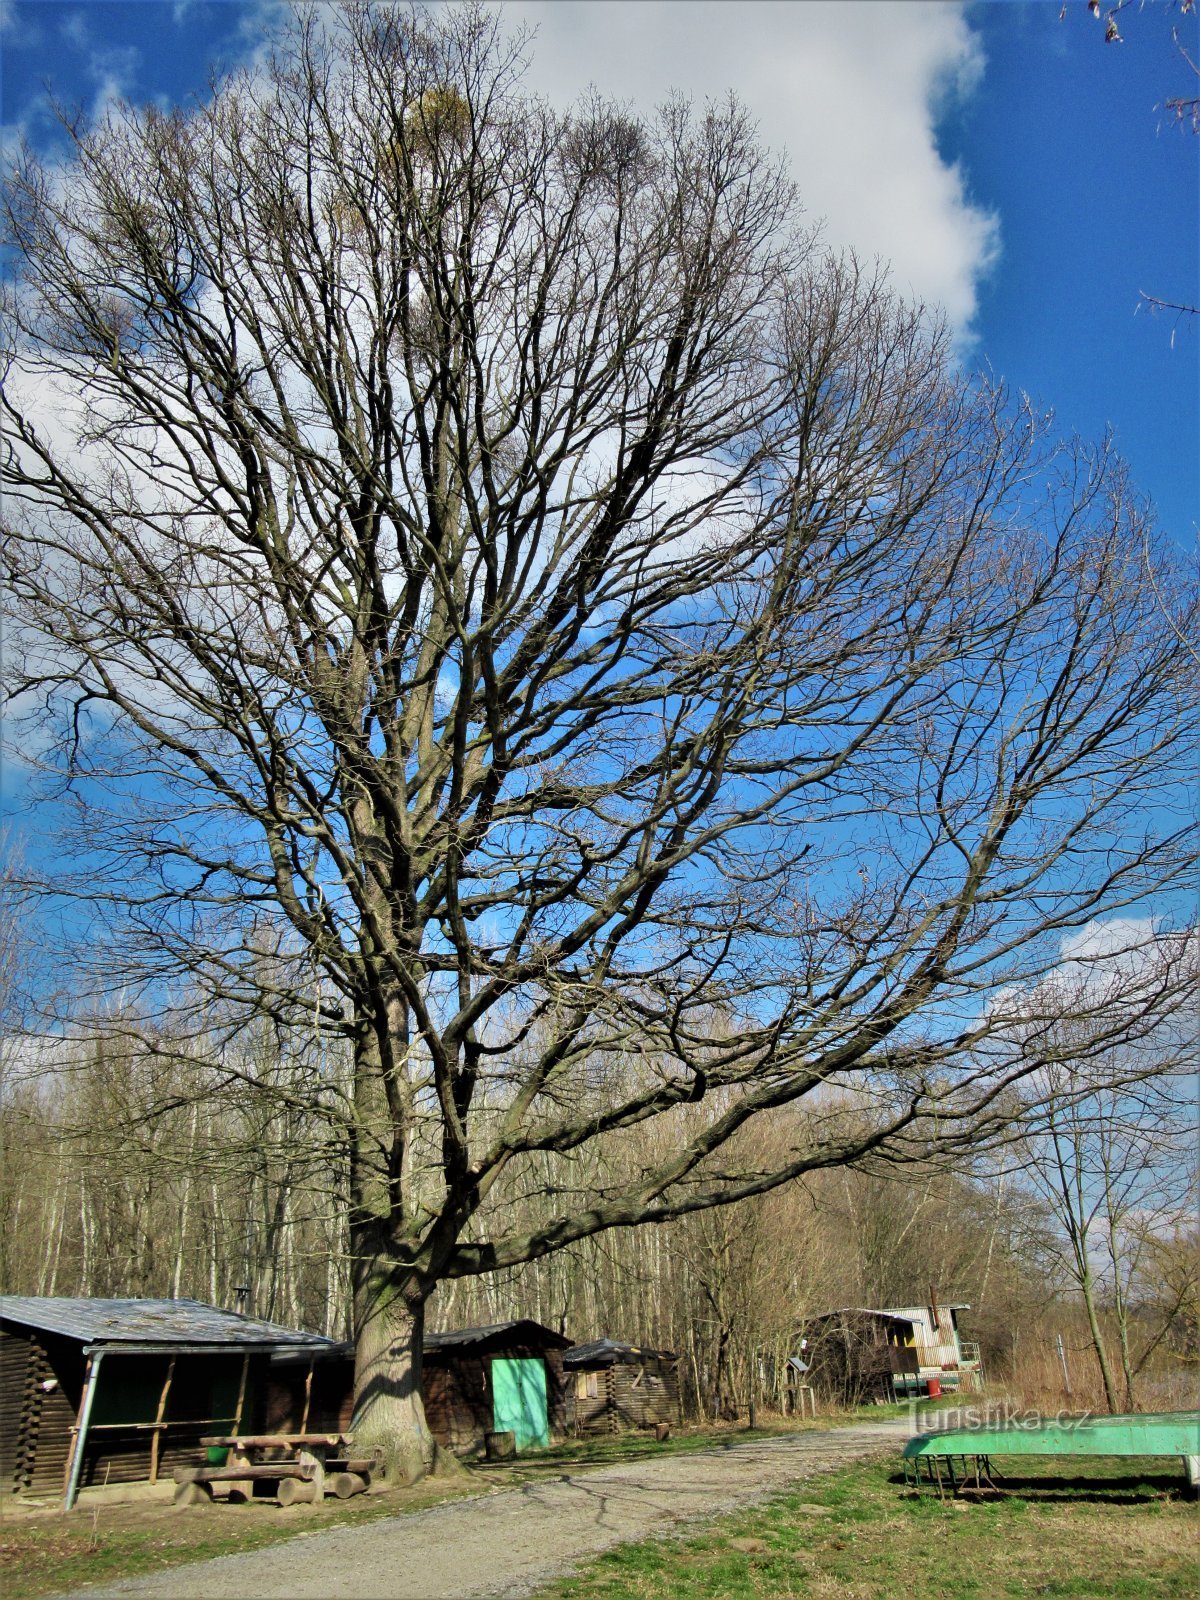 Celkový pohled na mohutný dub a jeho členitý habitus